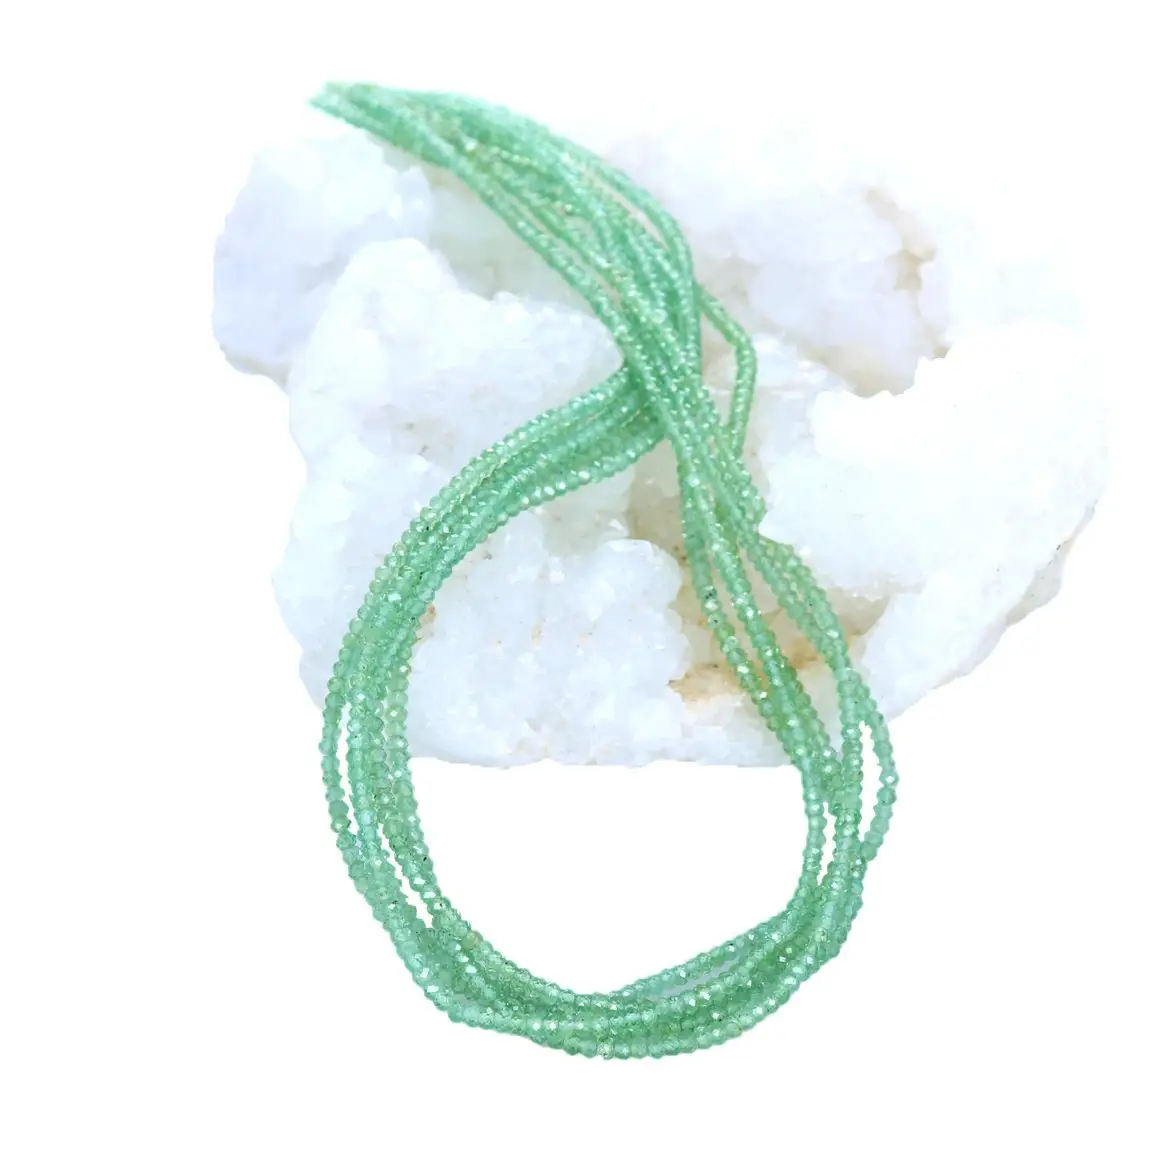 Kyanite는 이국적인 면 처리 된 론델 비즈 도매 많은 보석 녹색 자연 만들기 크기: 3-5mm